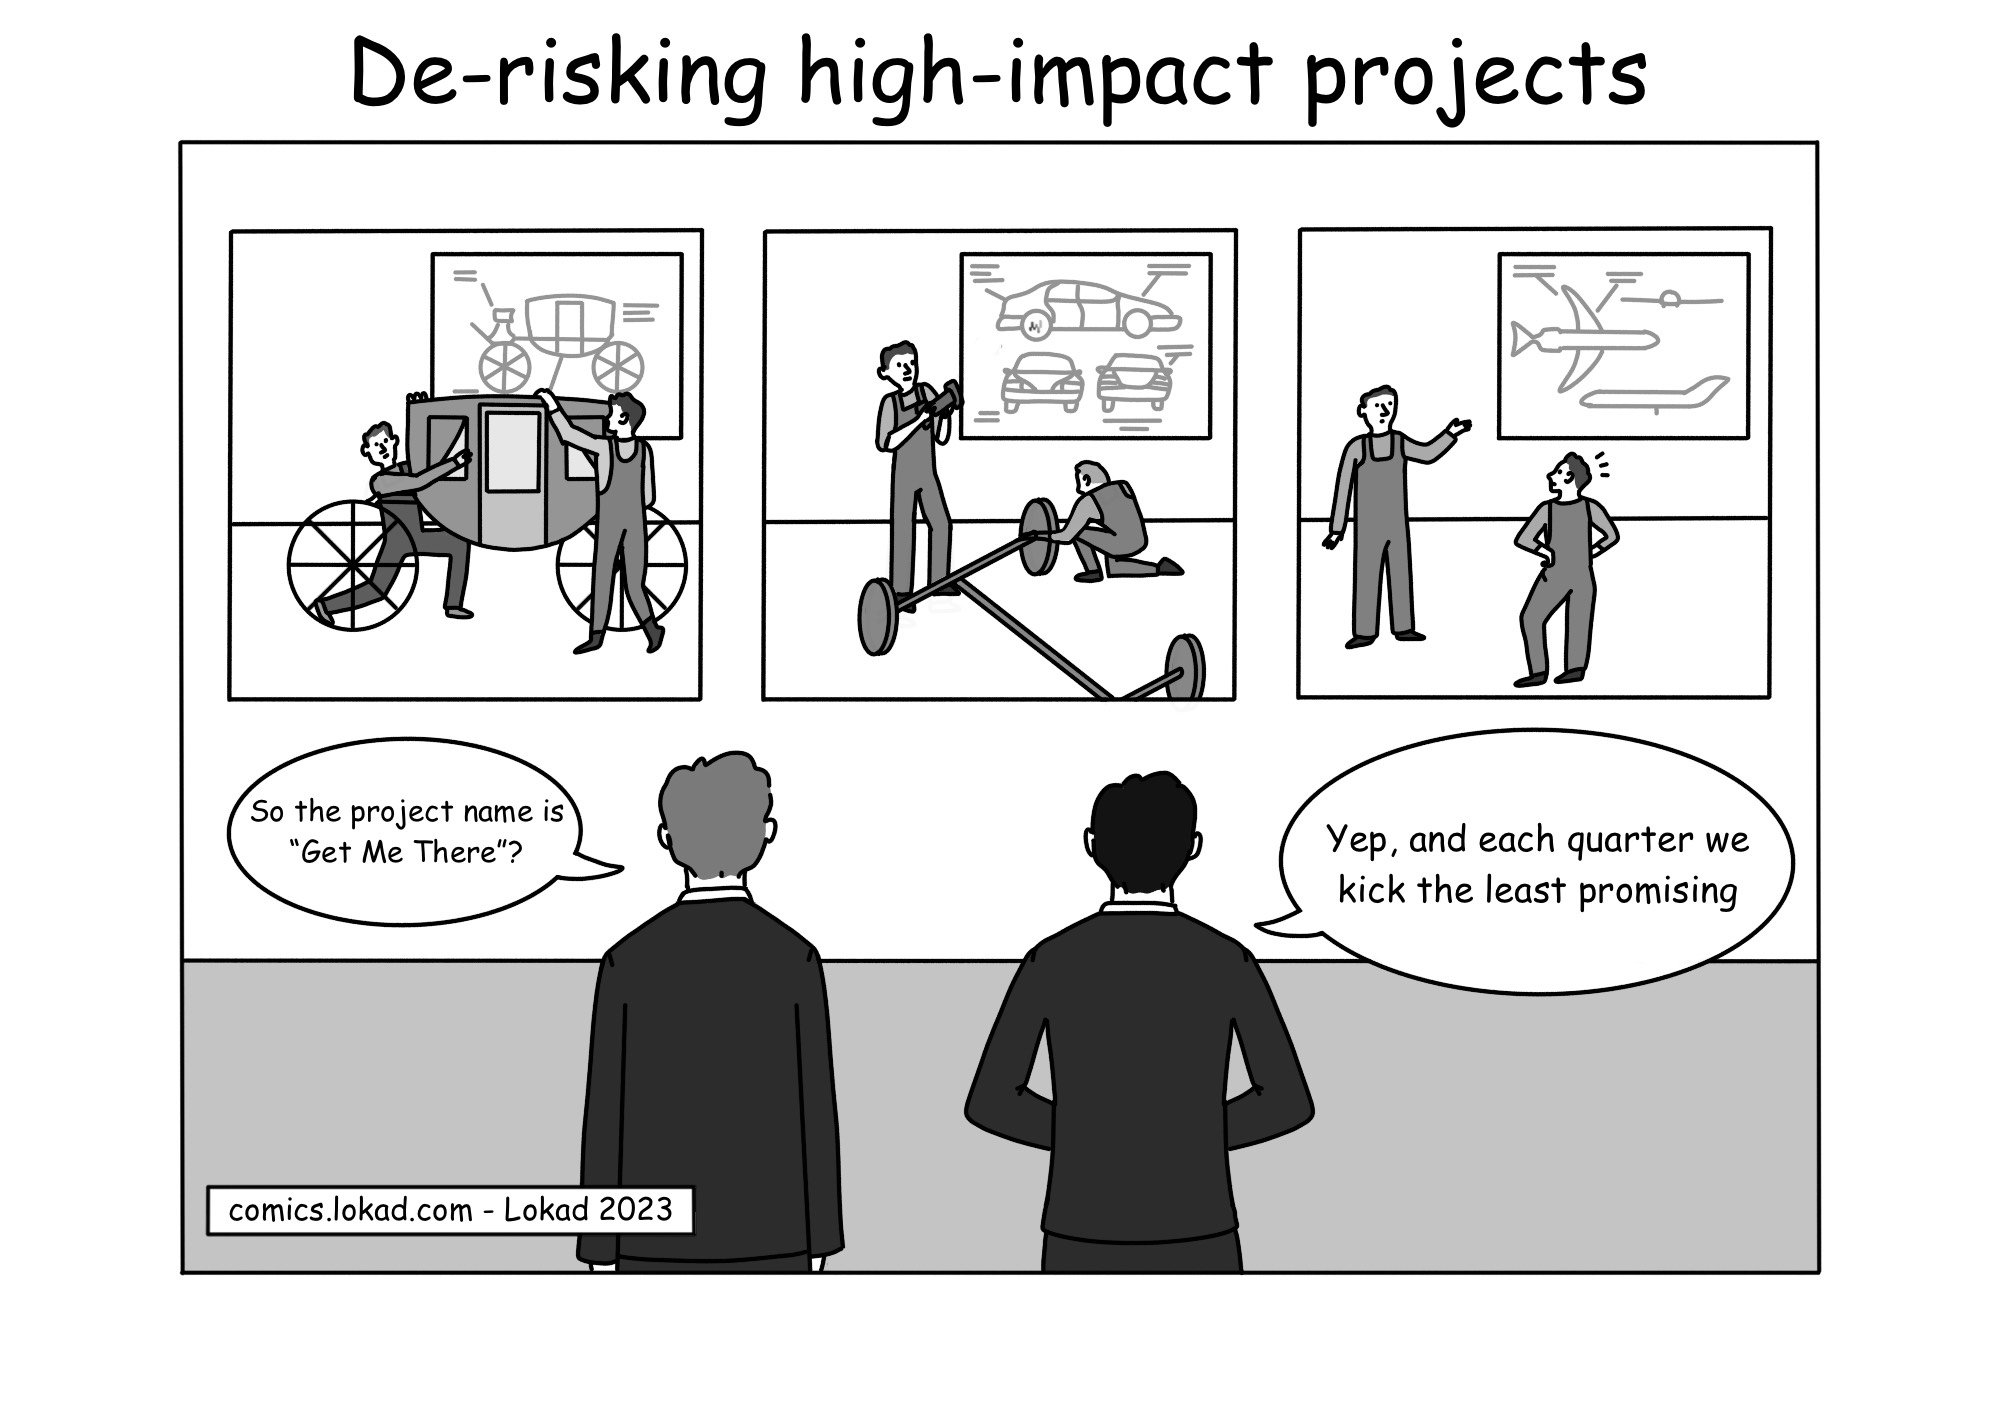 Fumetto sulla riduzione dei rischi dei progetti ad alto impatto